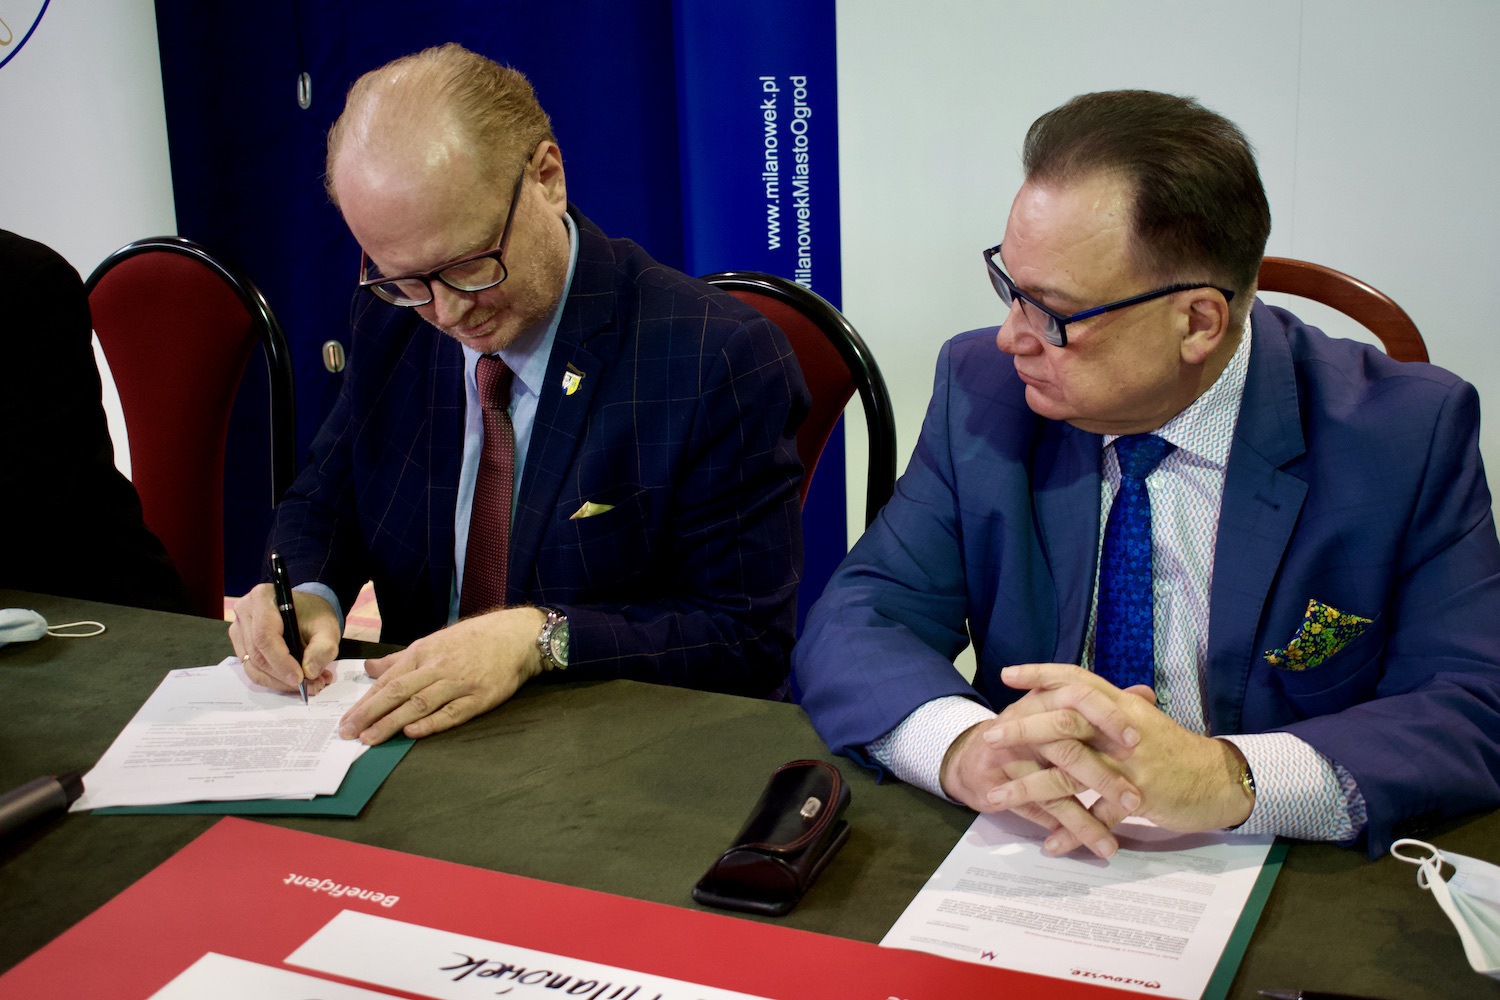 Burmistrz Piotr Remiszewski podpisujący umowę na dofinansowanie 